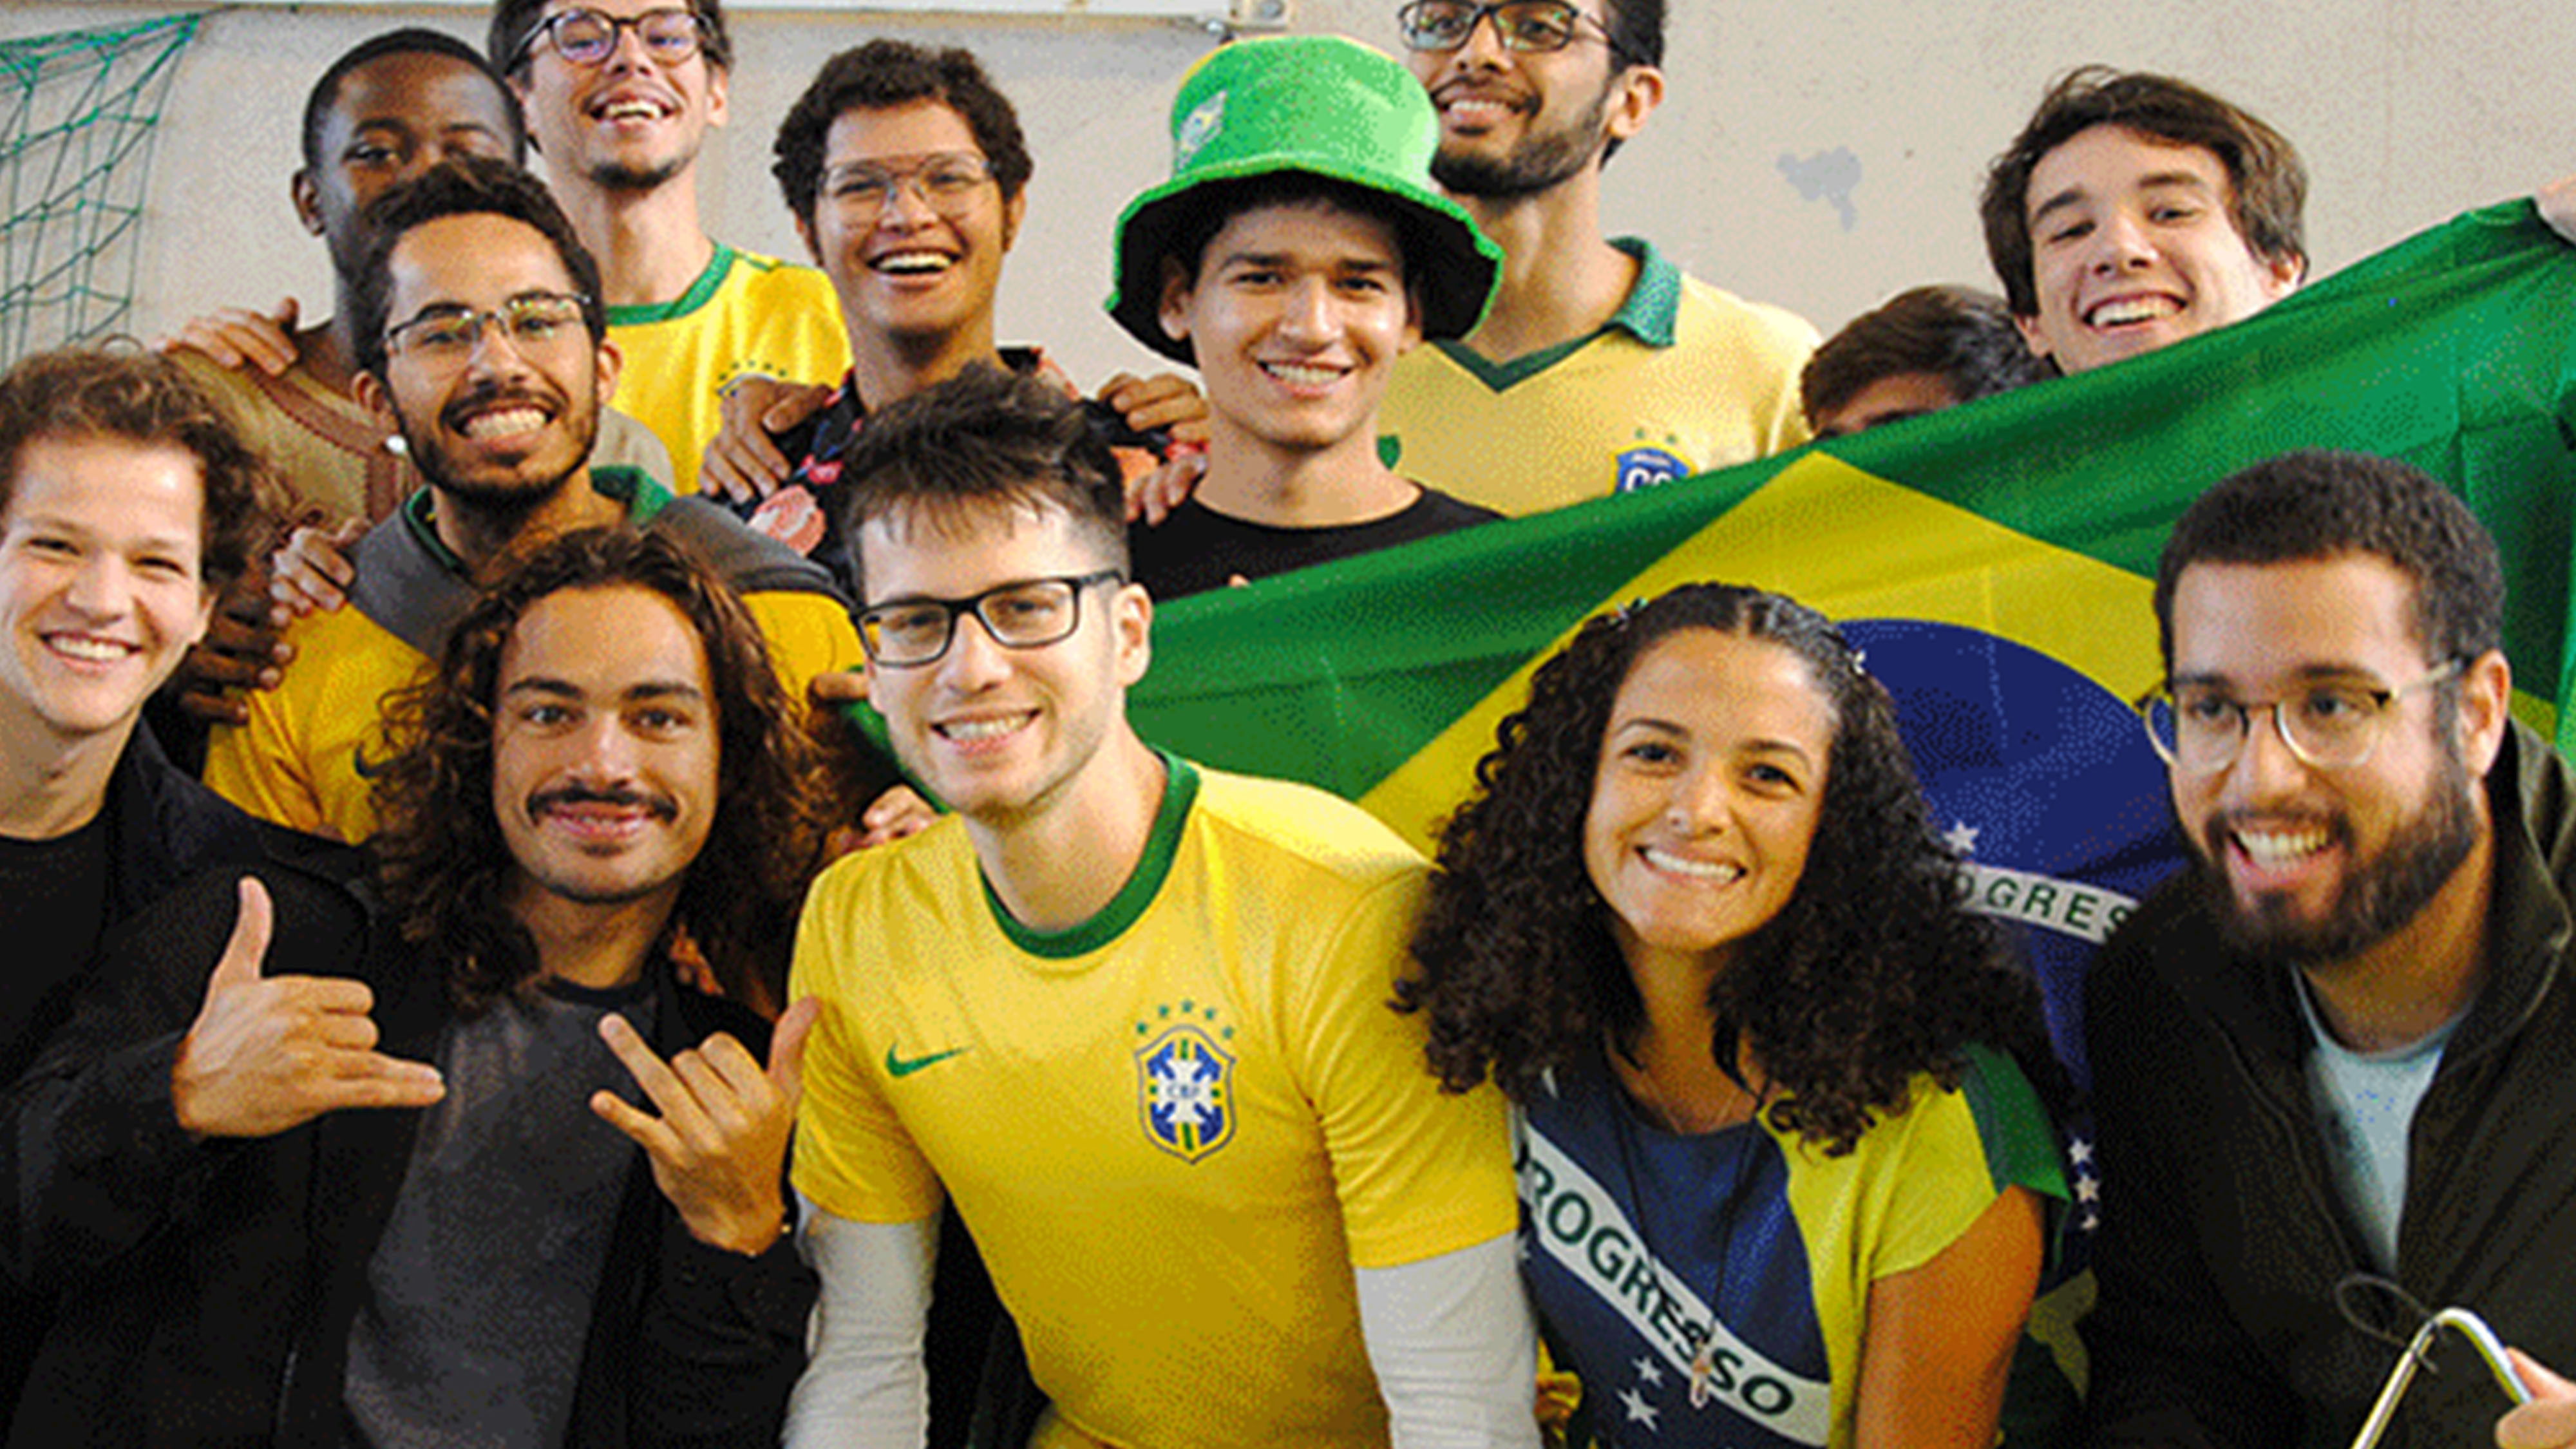 etudiants bresiliens matinee internationale 2019